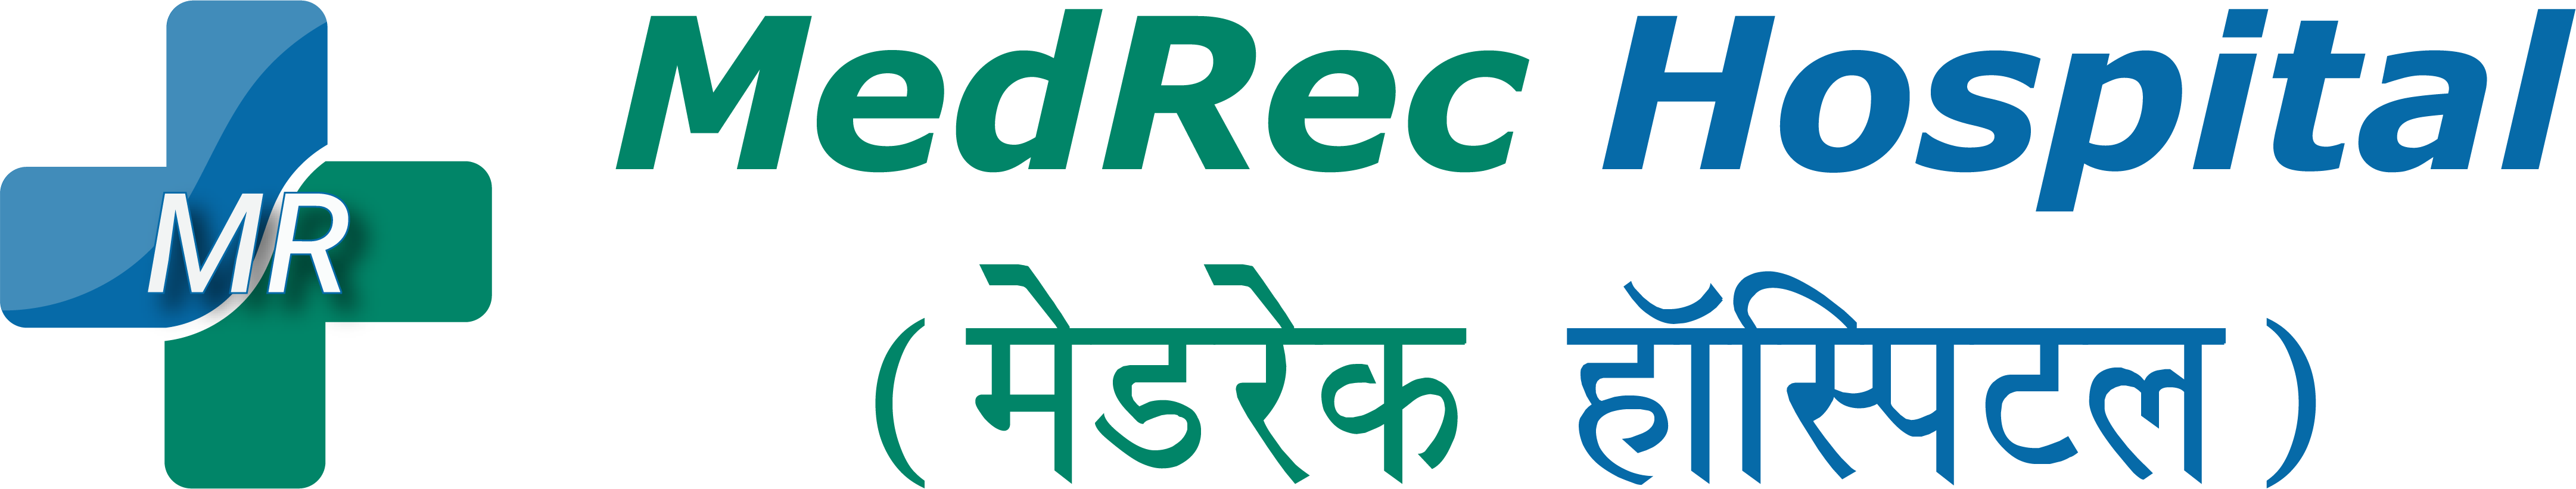 MedRec Hospital - Logo